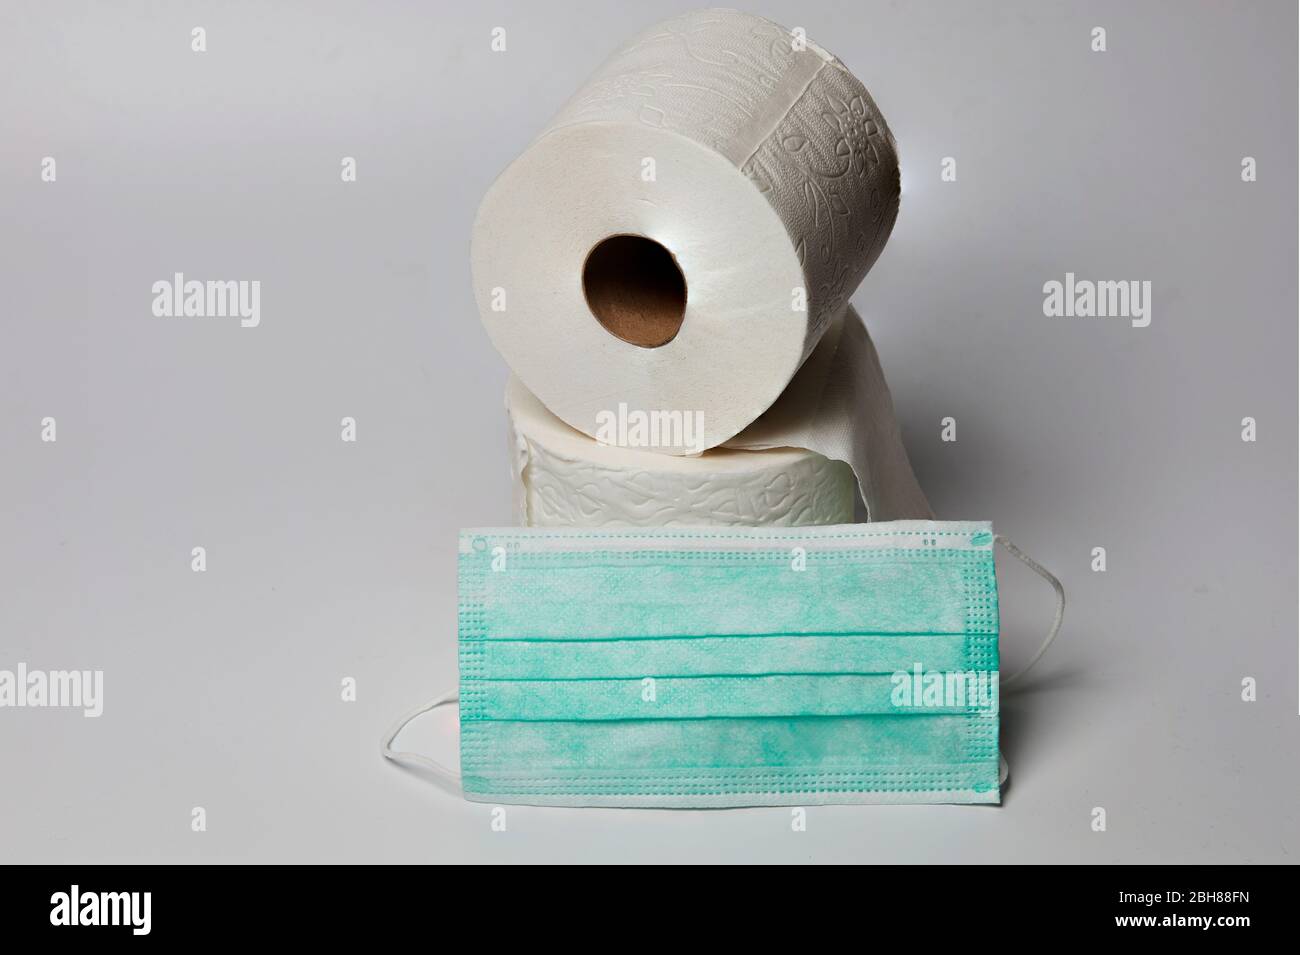 Stillleben von zwei Rollen Toilettenpapier auf weißem Hintergrund mit chirurgischer Maske Stockfoto